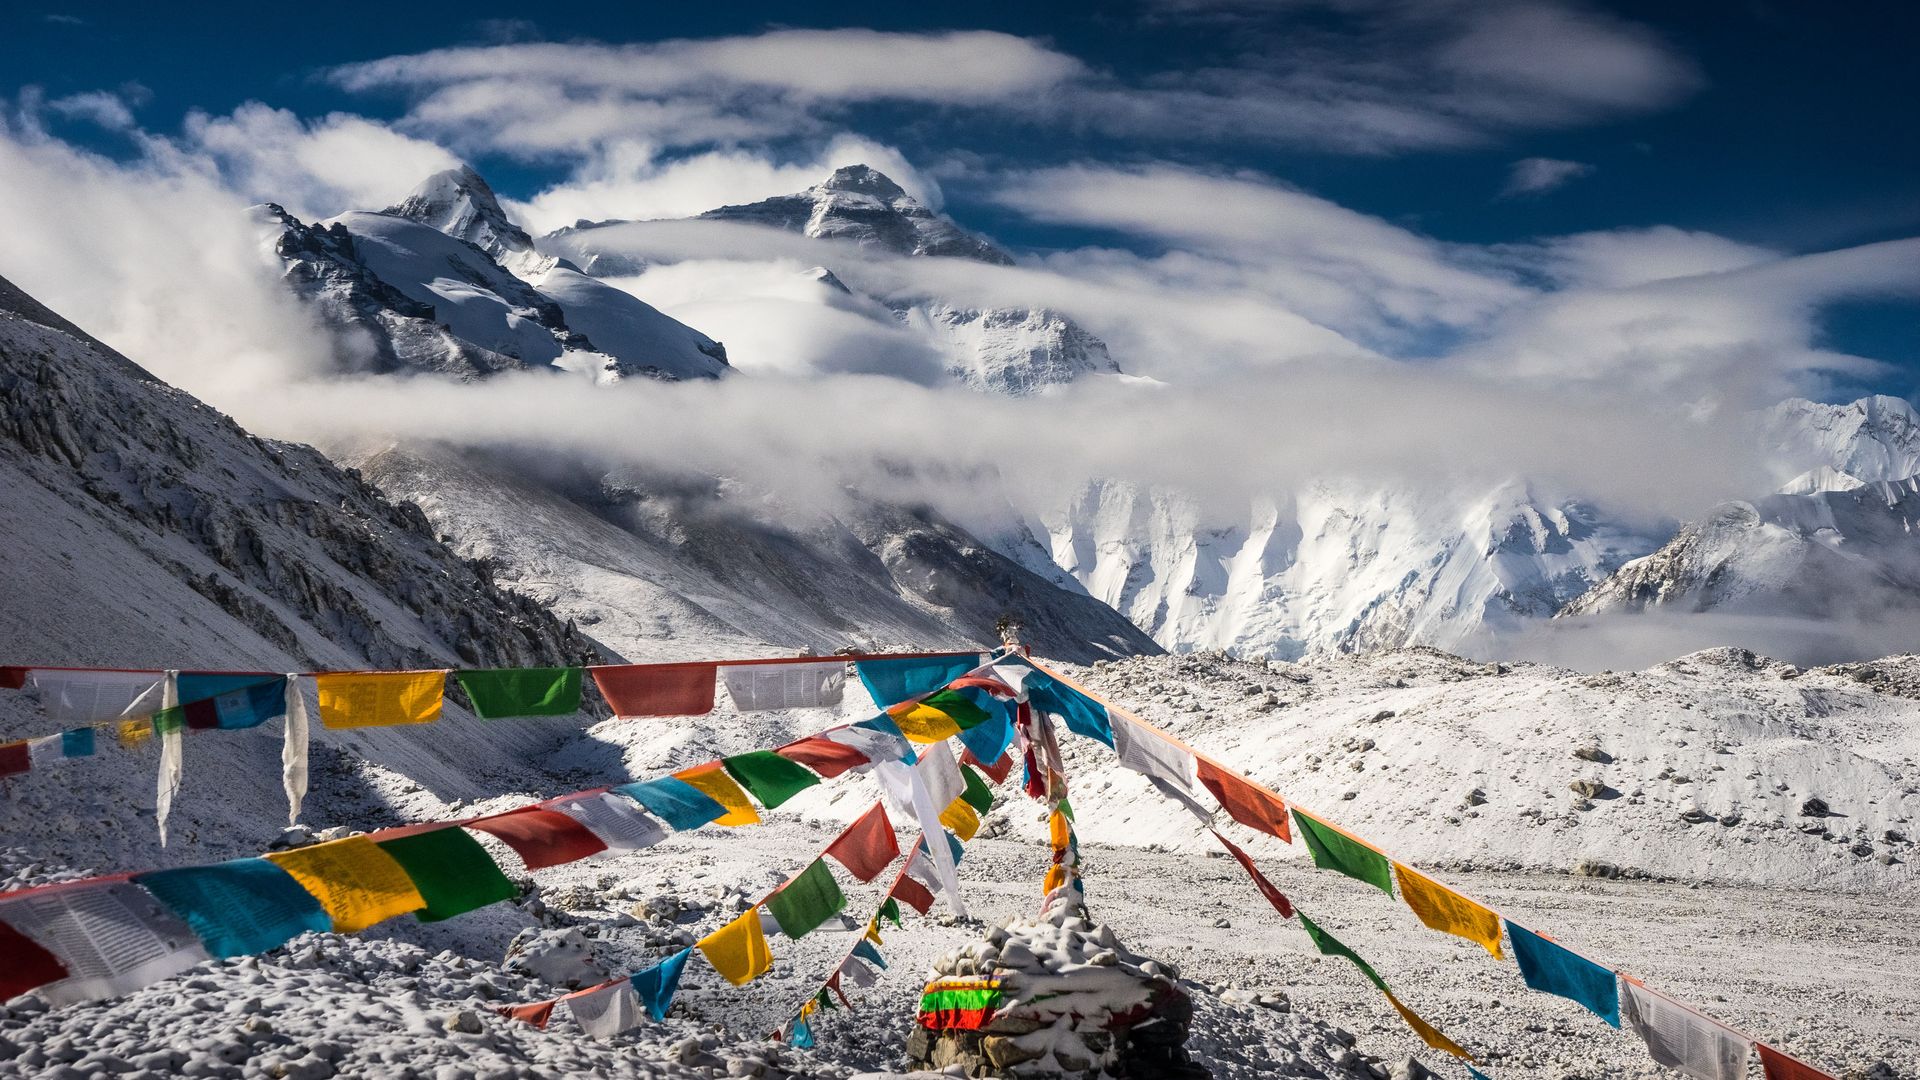 Tibetan prayer flags hang between snowy peaks